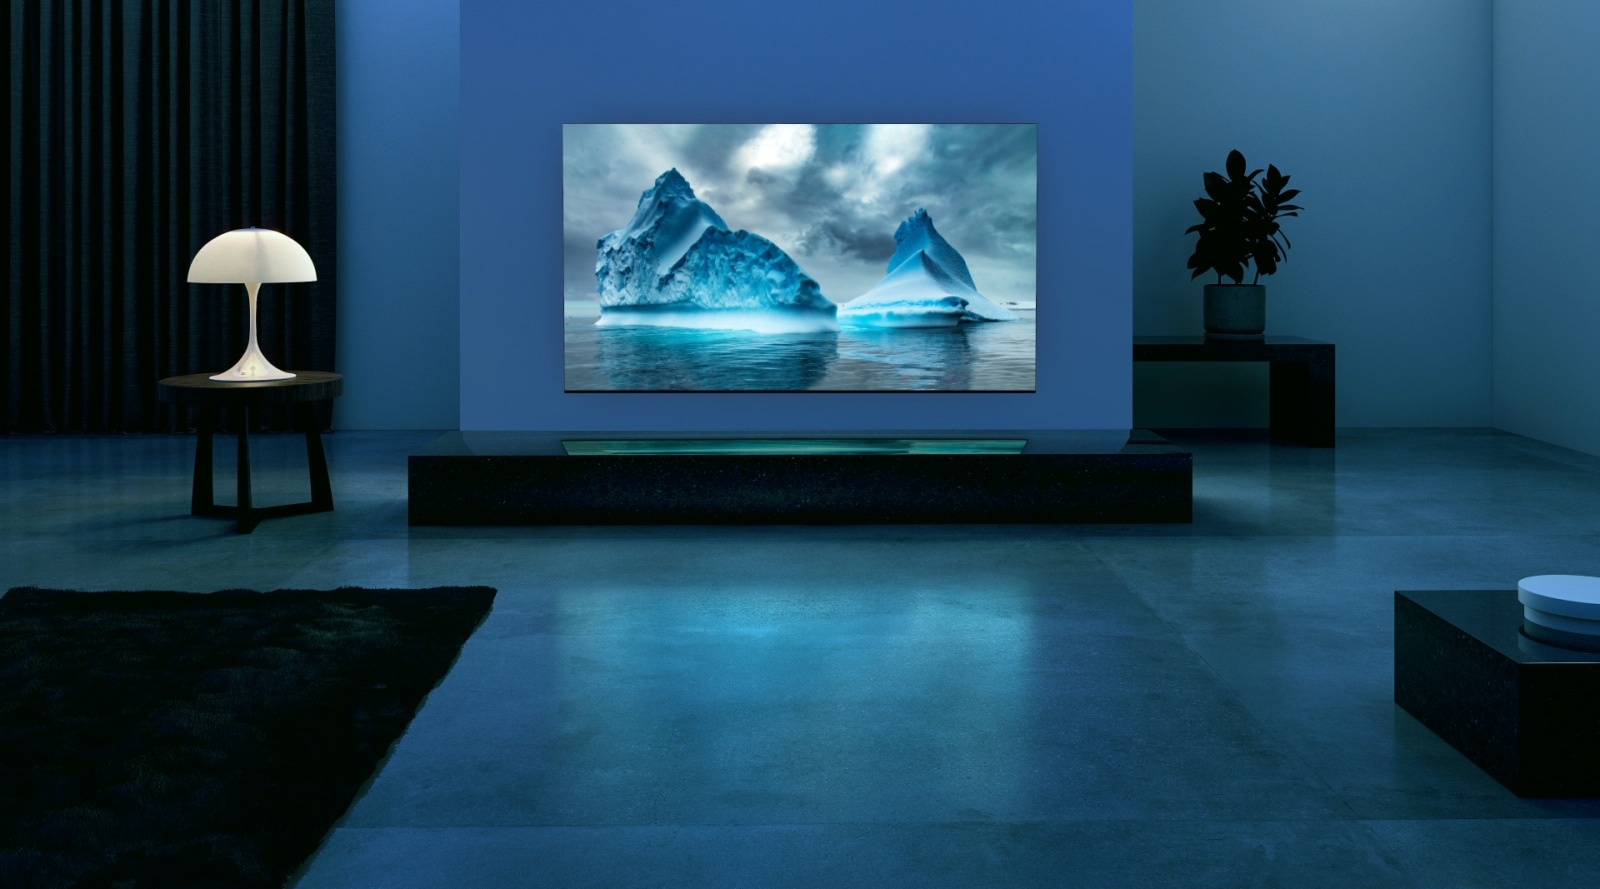 Modra neonska veriga se premika čez podobo modrega ledenika. Kamera se odmakne in na televizijskem zaslonu pokaže tistega ledeniškega sina. Televizor je postavljen v široko dnevno sobo z modrim ozadjem.